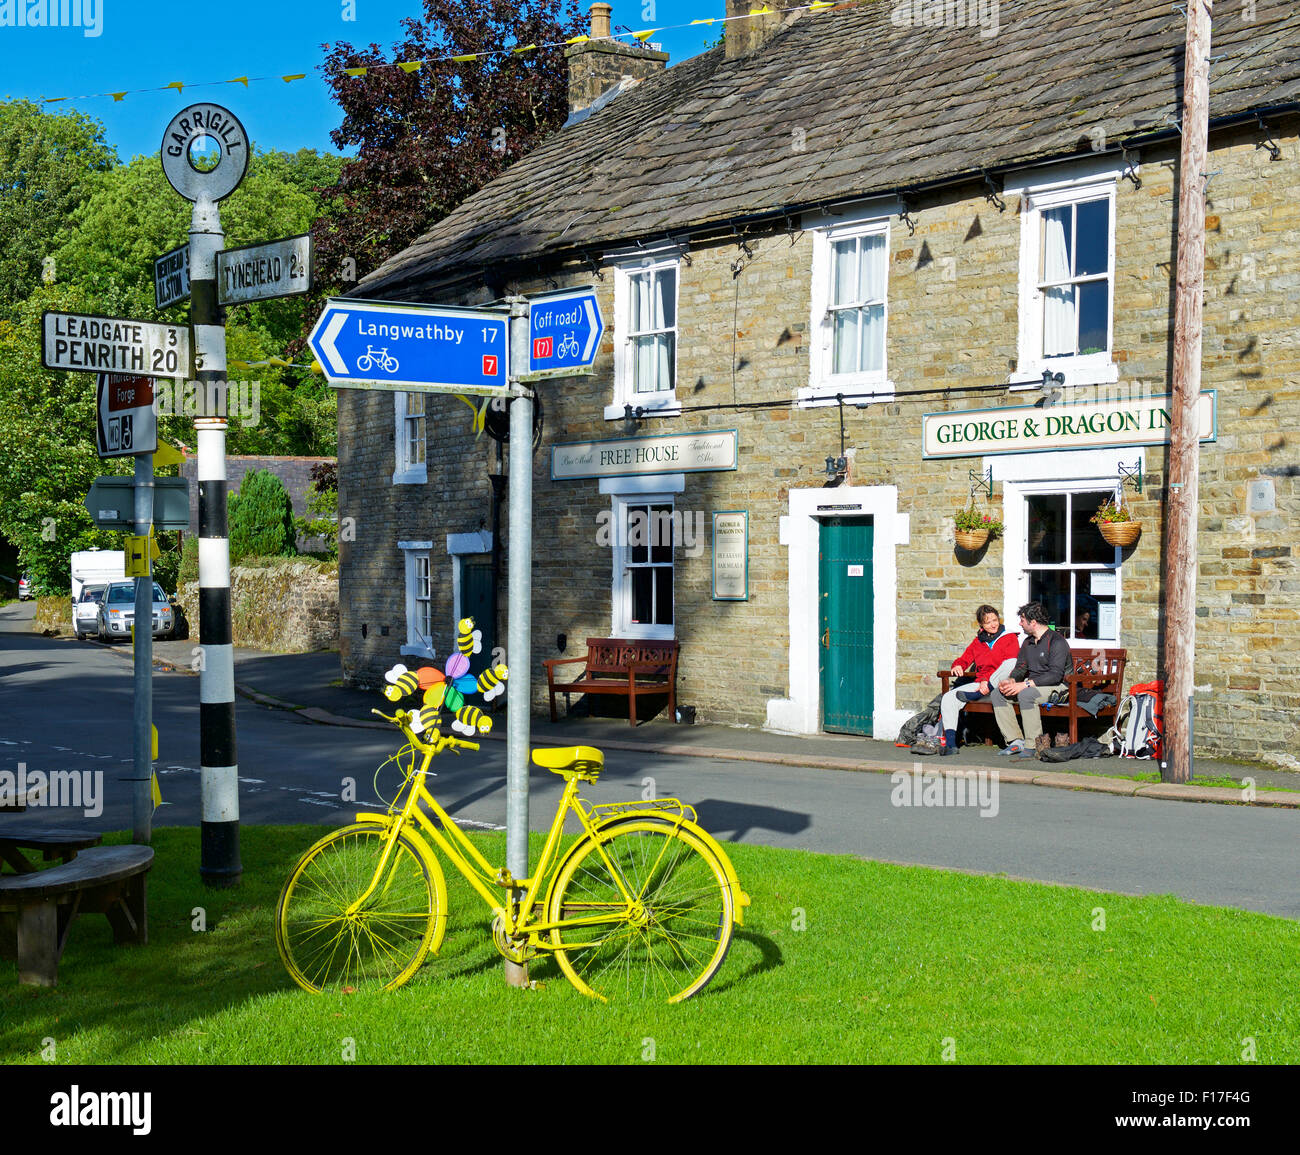 Deux marcheurs Pennine Way assis dehors le George & Dragon pub, dans le village d'Garrigil, Cumbria, Angleterre, Royaume-Uni Banque D'Images